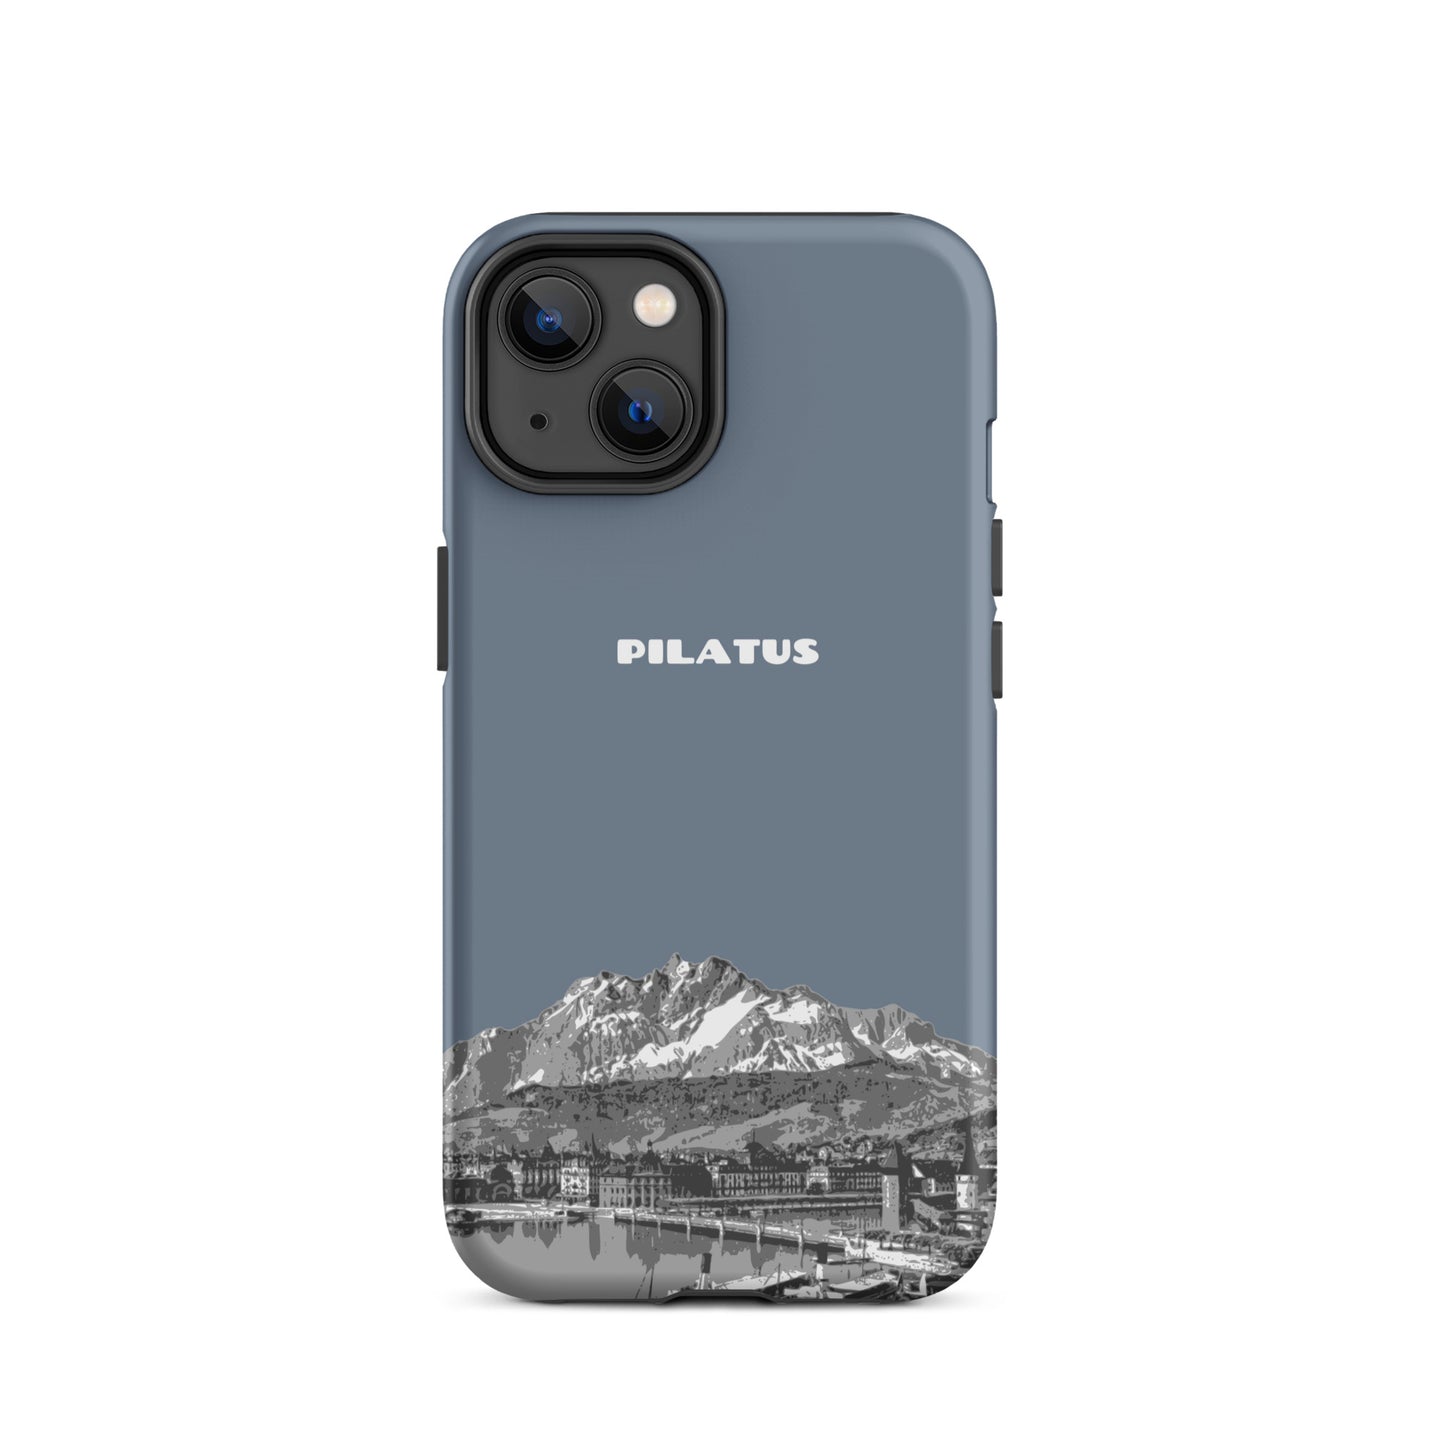 iPhone Case - Pilatus - Schiefergrau